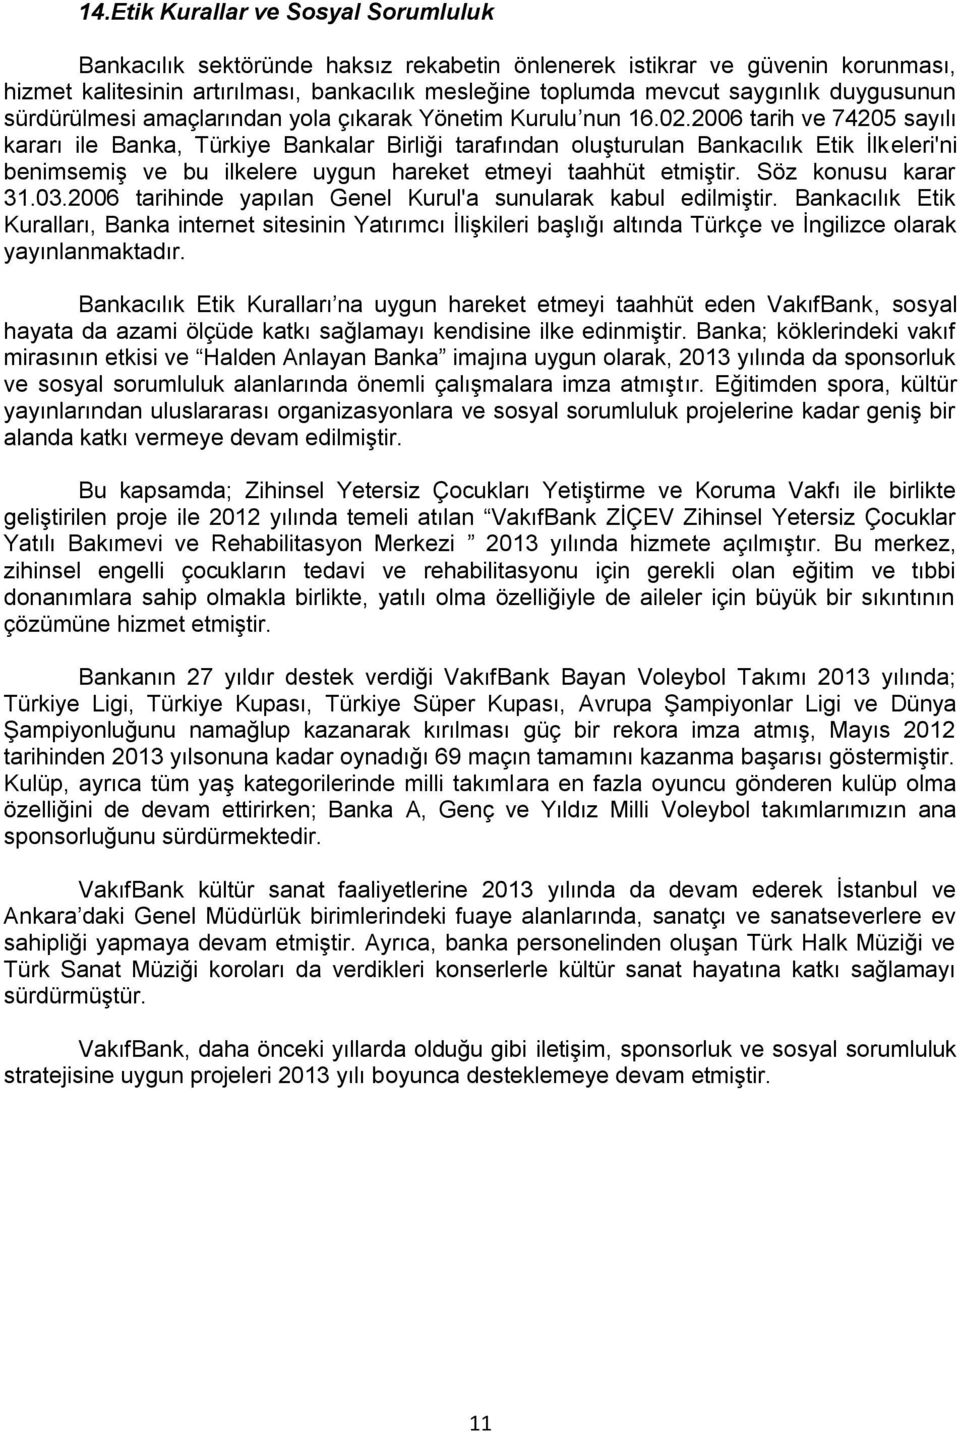 2006 tarih ve 74205 sayılı kararı ile Banka, Türkiye Bankalar Birliği tarafından oluşturulan Bankacılık Etik İlkeleri'ni benimsemiş ve bu ilkelere uygun hareket etmeyi taahhüt etmiştir.